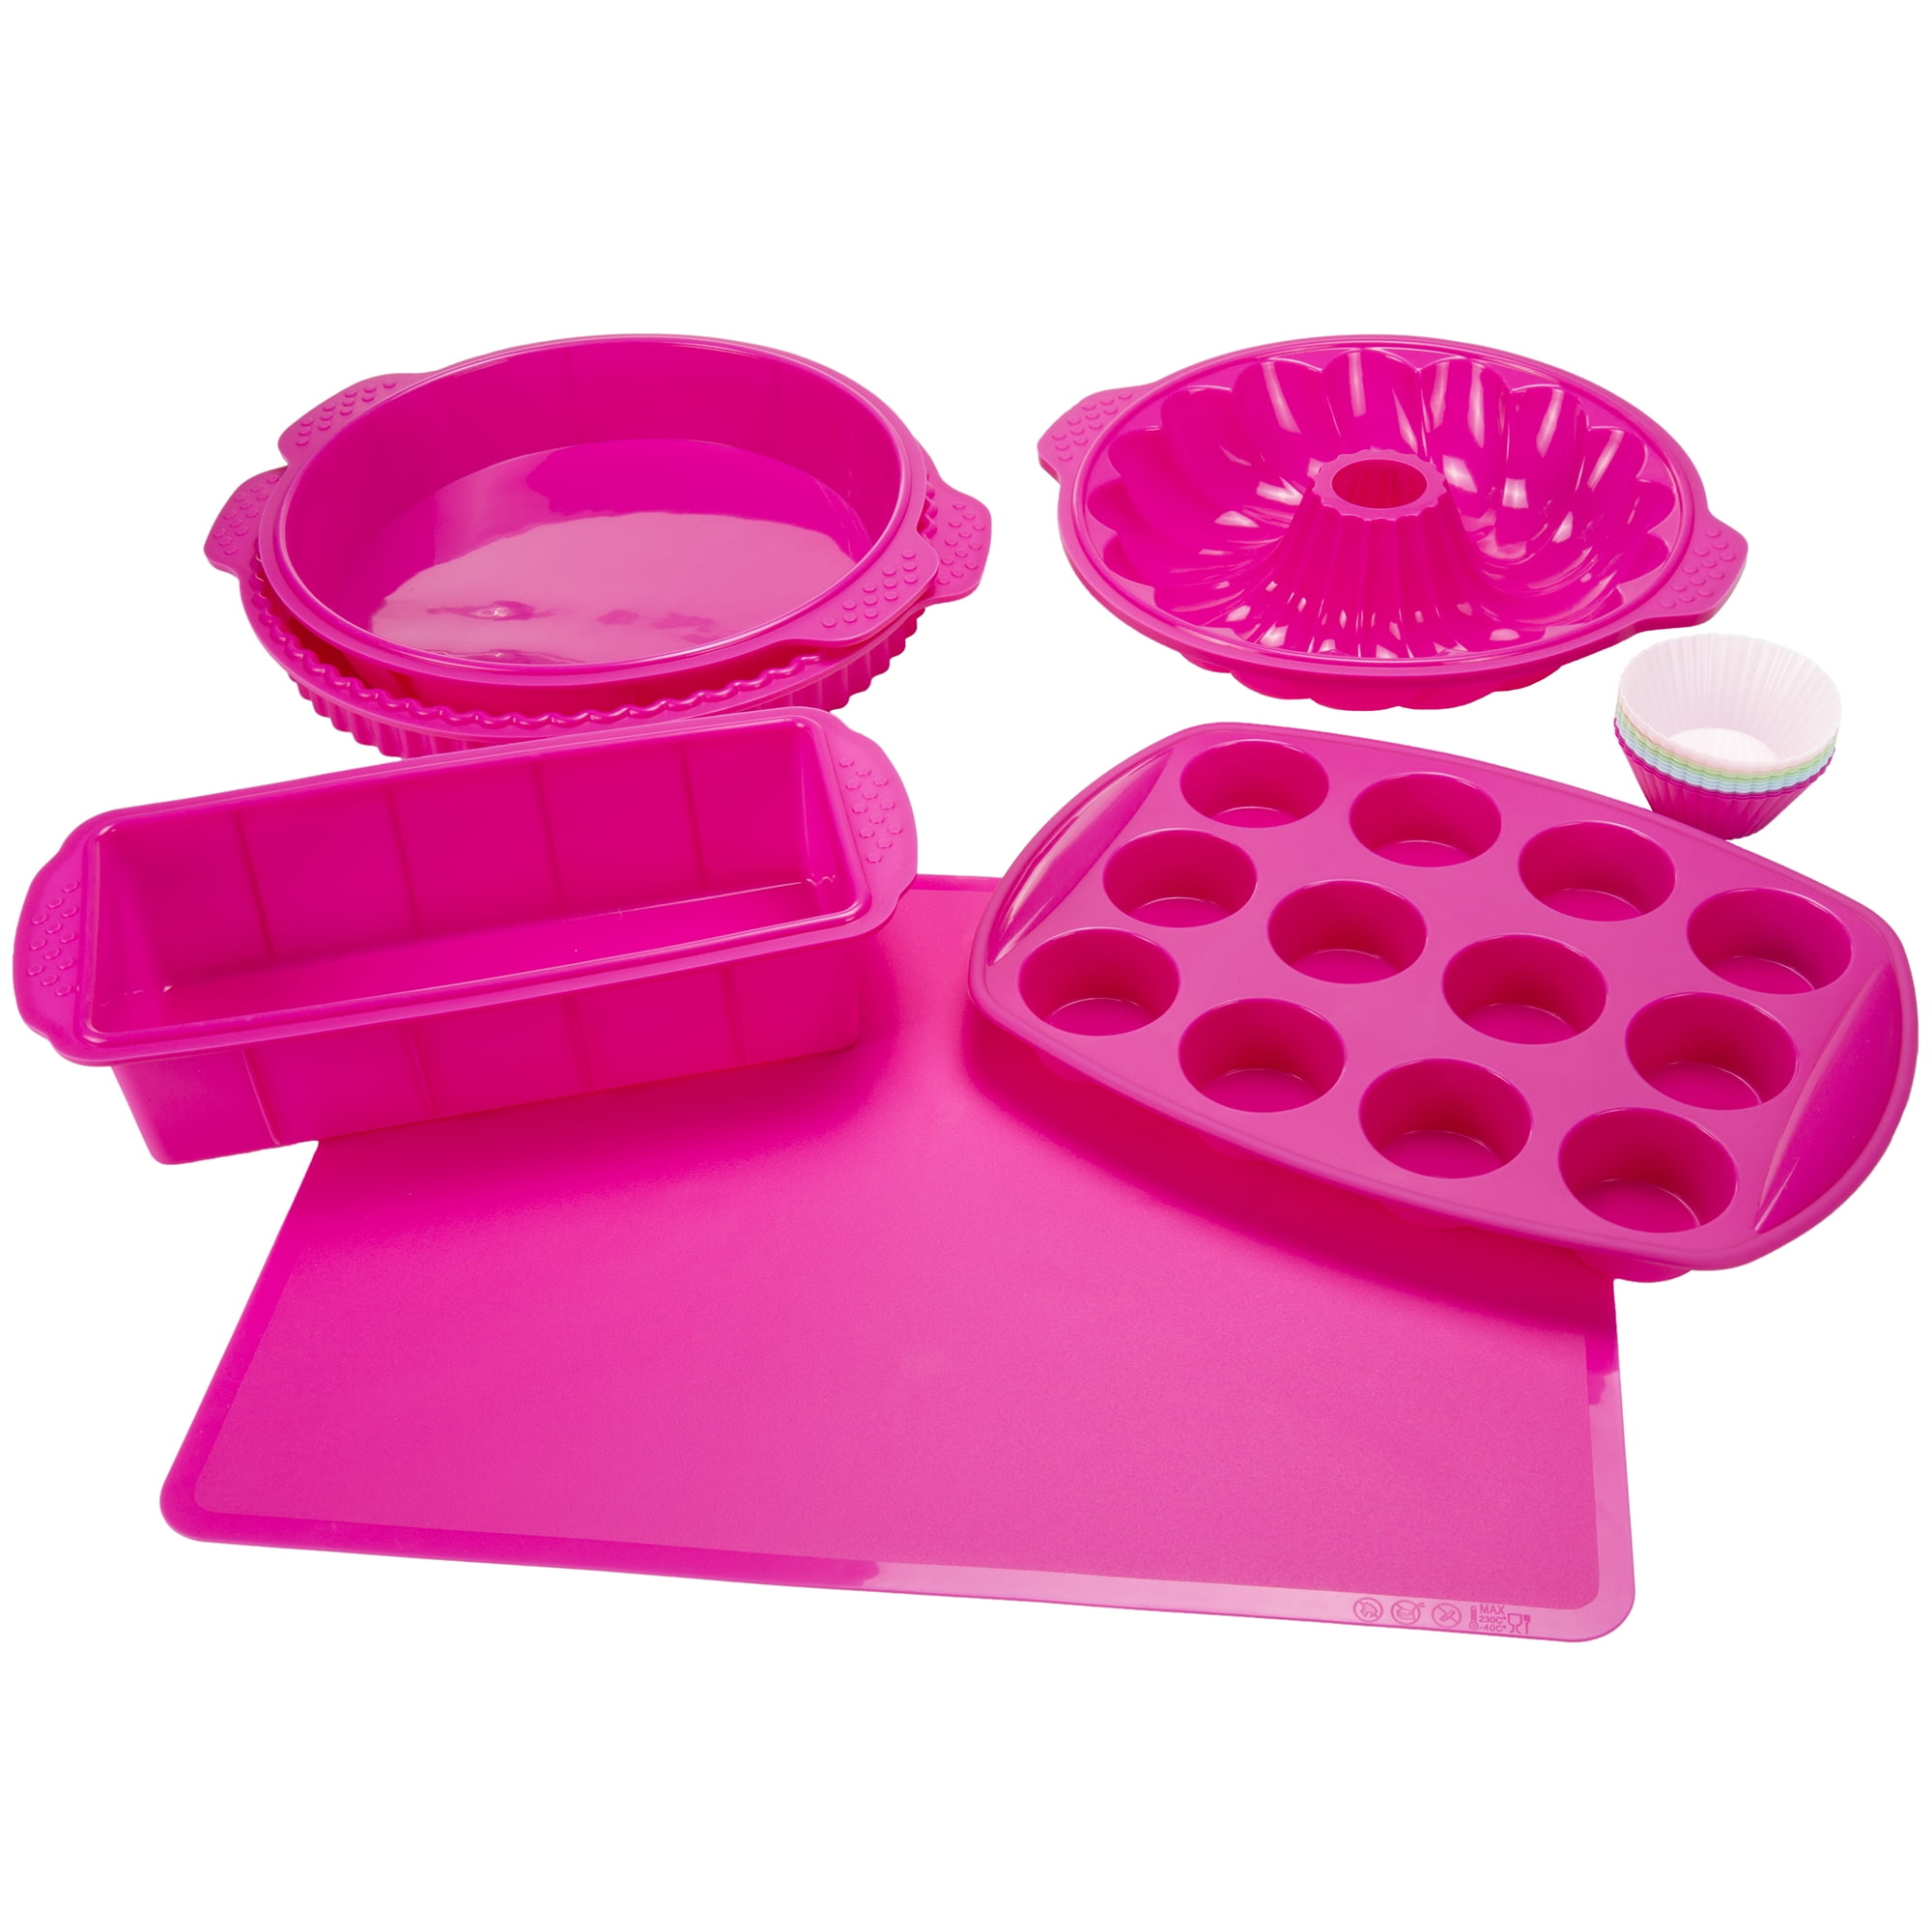 Finelife Products - Bake Buddy 10 Piece Set Silicone Bakeware & Dishwasher  Safe